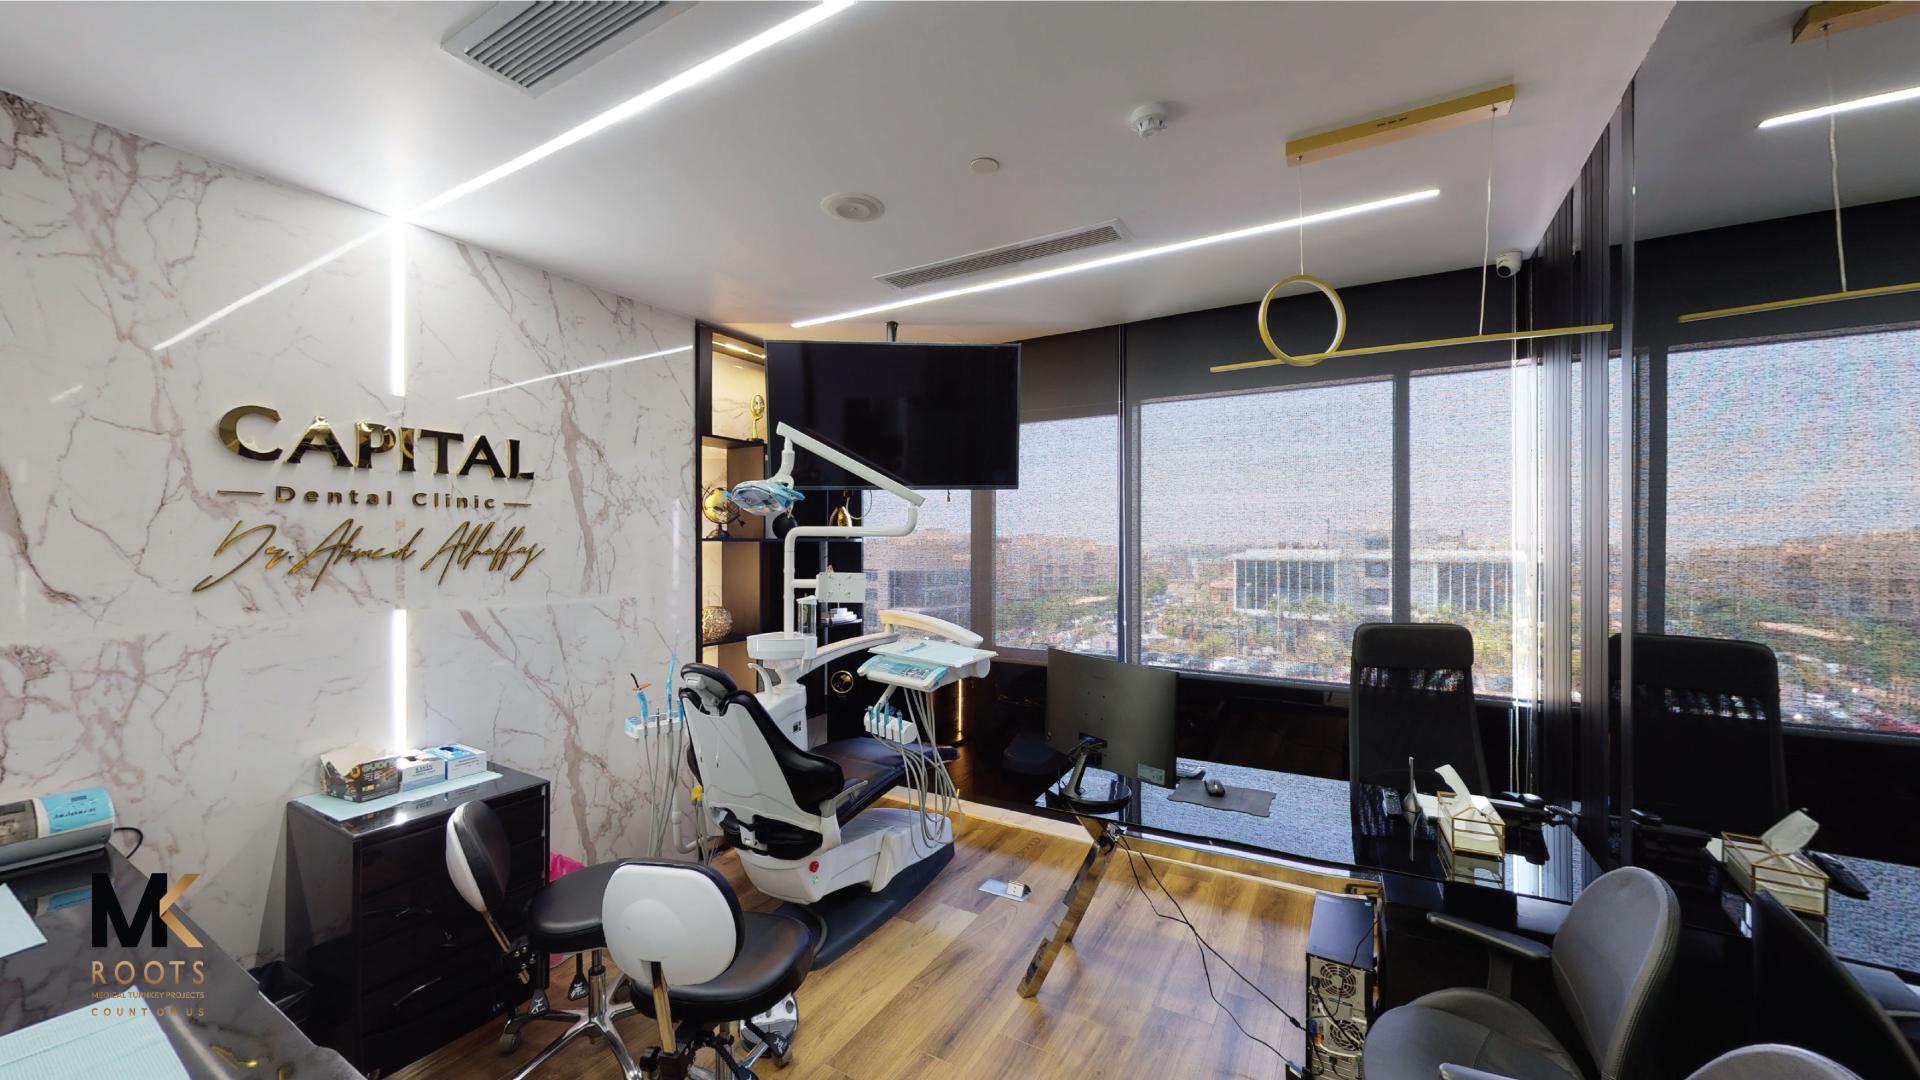 Capital Dental Clinic